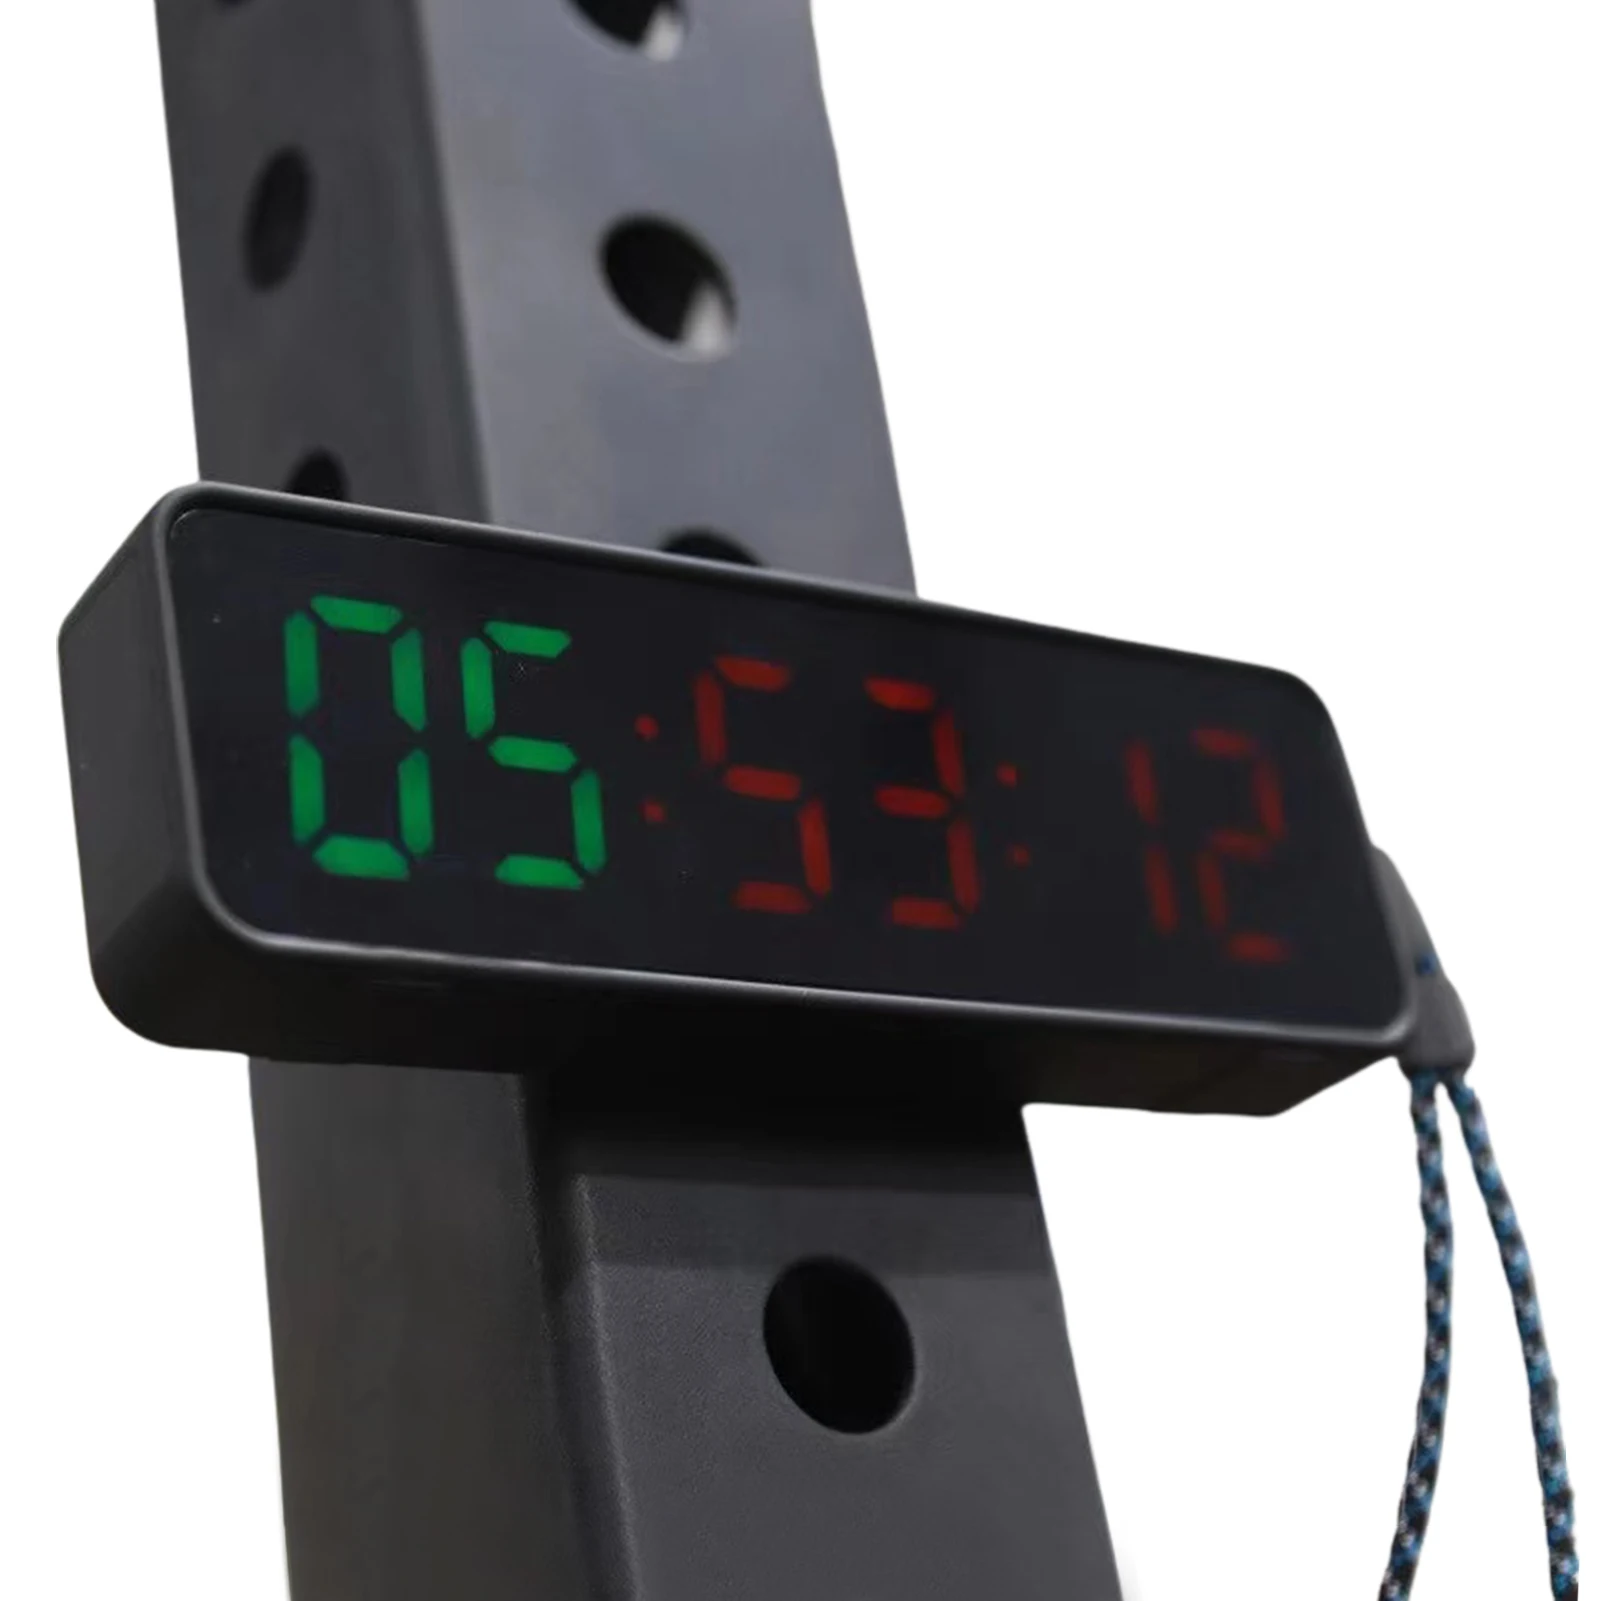 Tragbare Turnhalle Timer LED Fitness Timer Clock Tragbare Workout Uhr Mit Fernbedienung Für Home Gym Fitness Garage Outdoor Sport